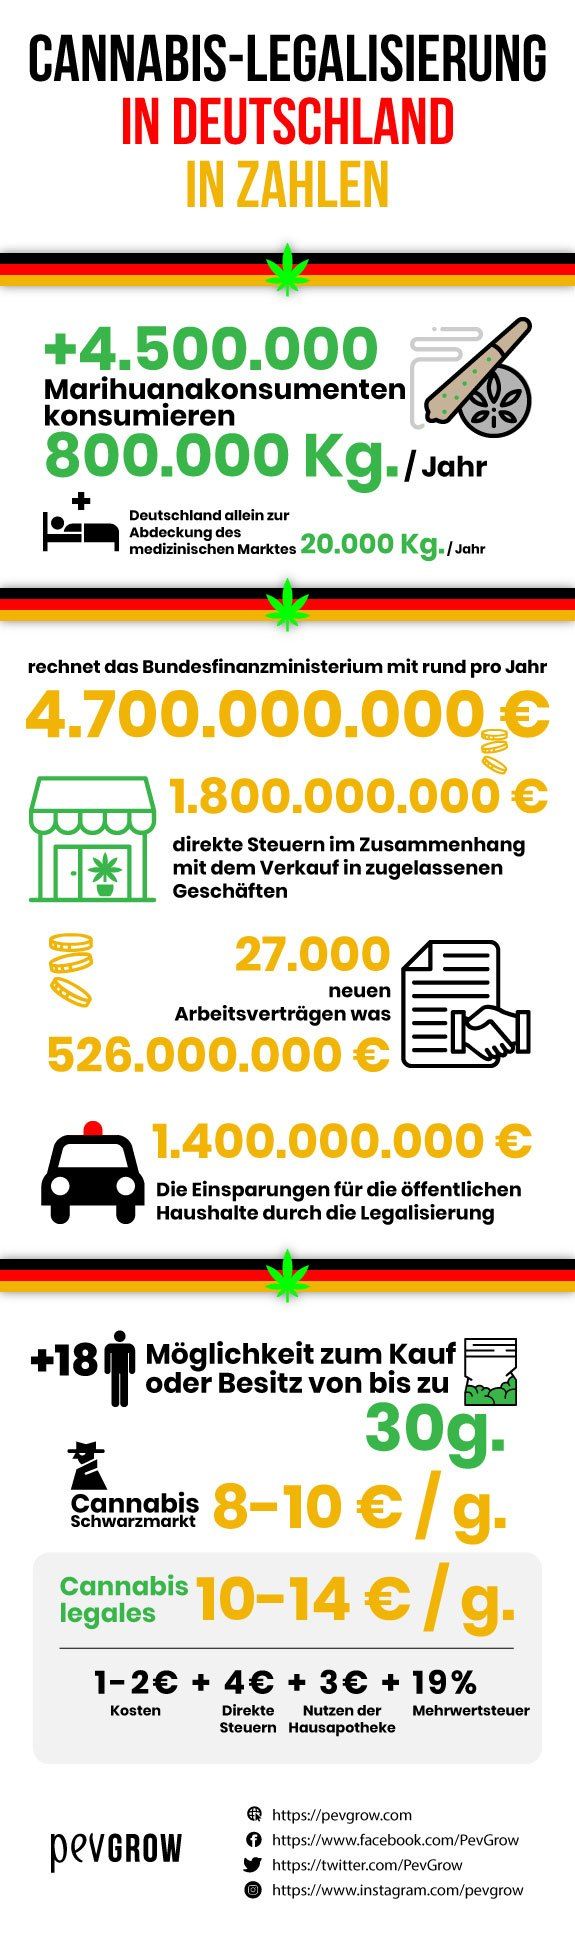 Infografik zur Legalisierung von Marihuana in Deutschland